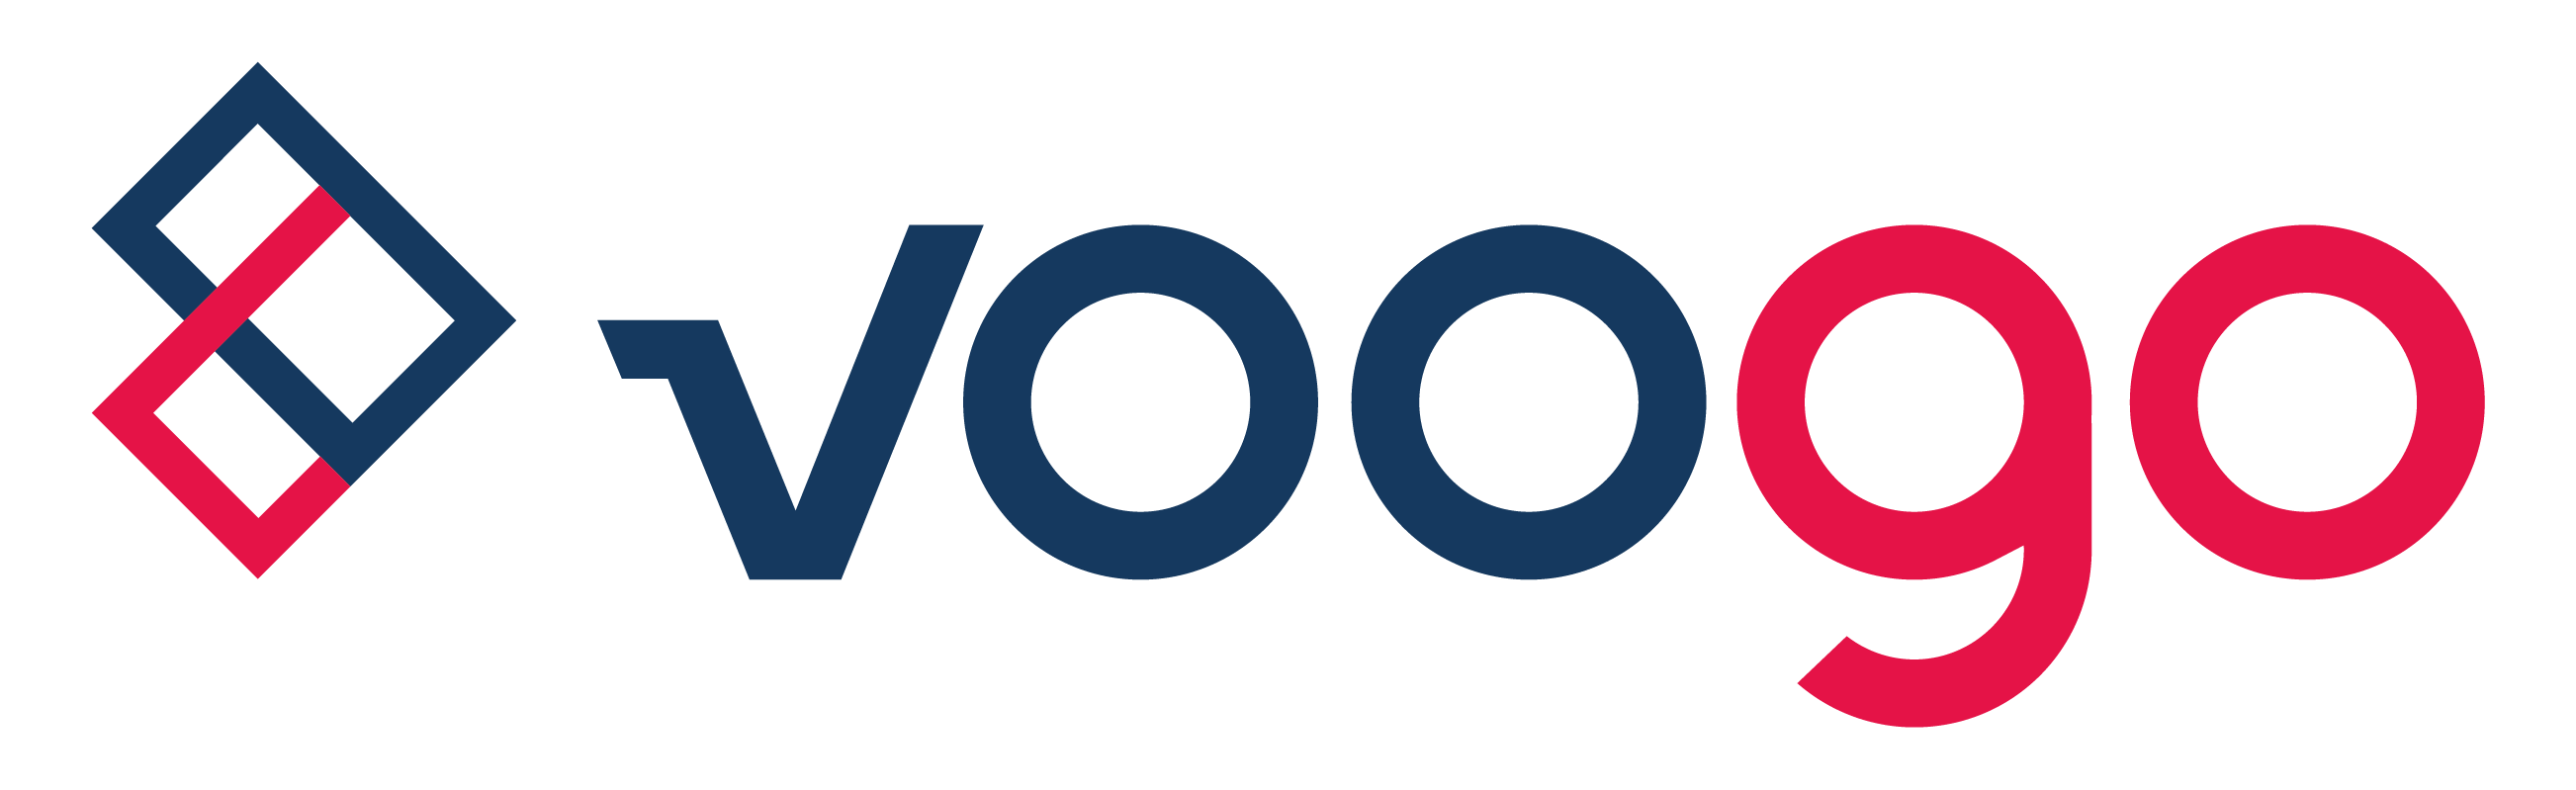 logo-voogo-kolor